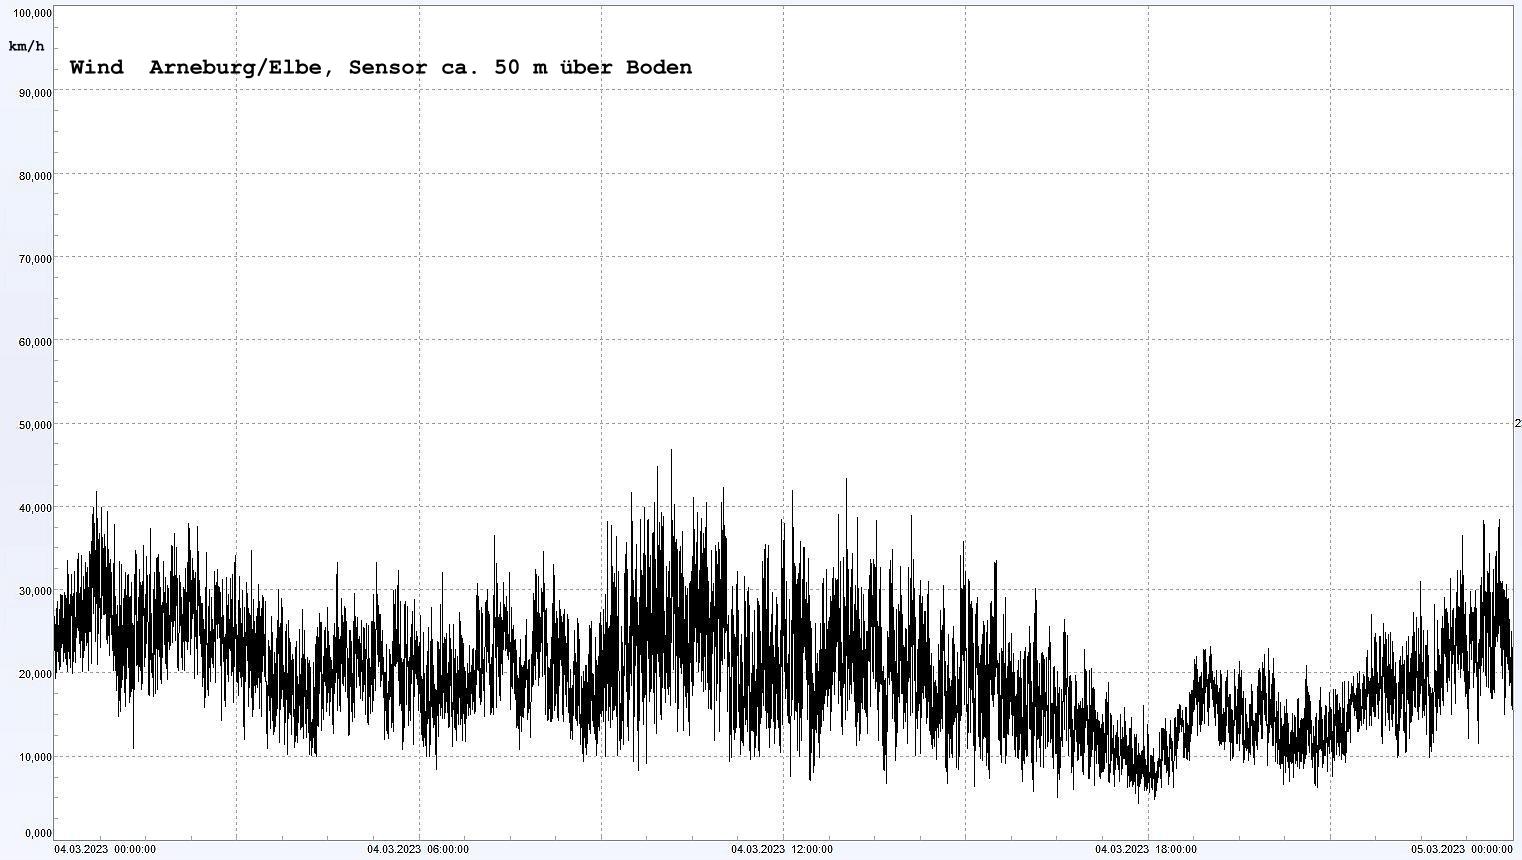 Arneburg Winddaten 04.03.2023, 
  Sensor auf Gebäude, ca. 50 m über Erdboden, 5s-Aufzeichnung